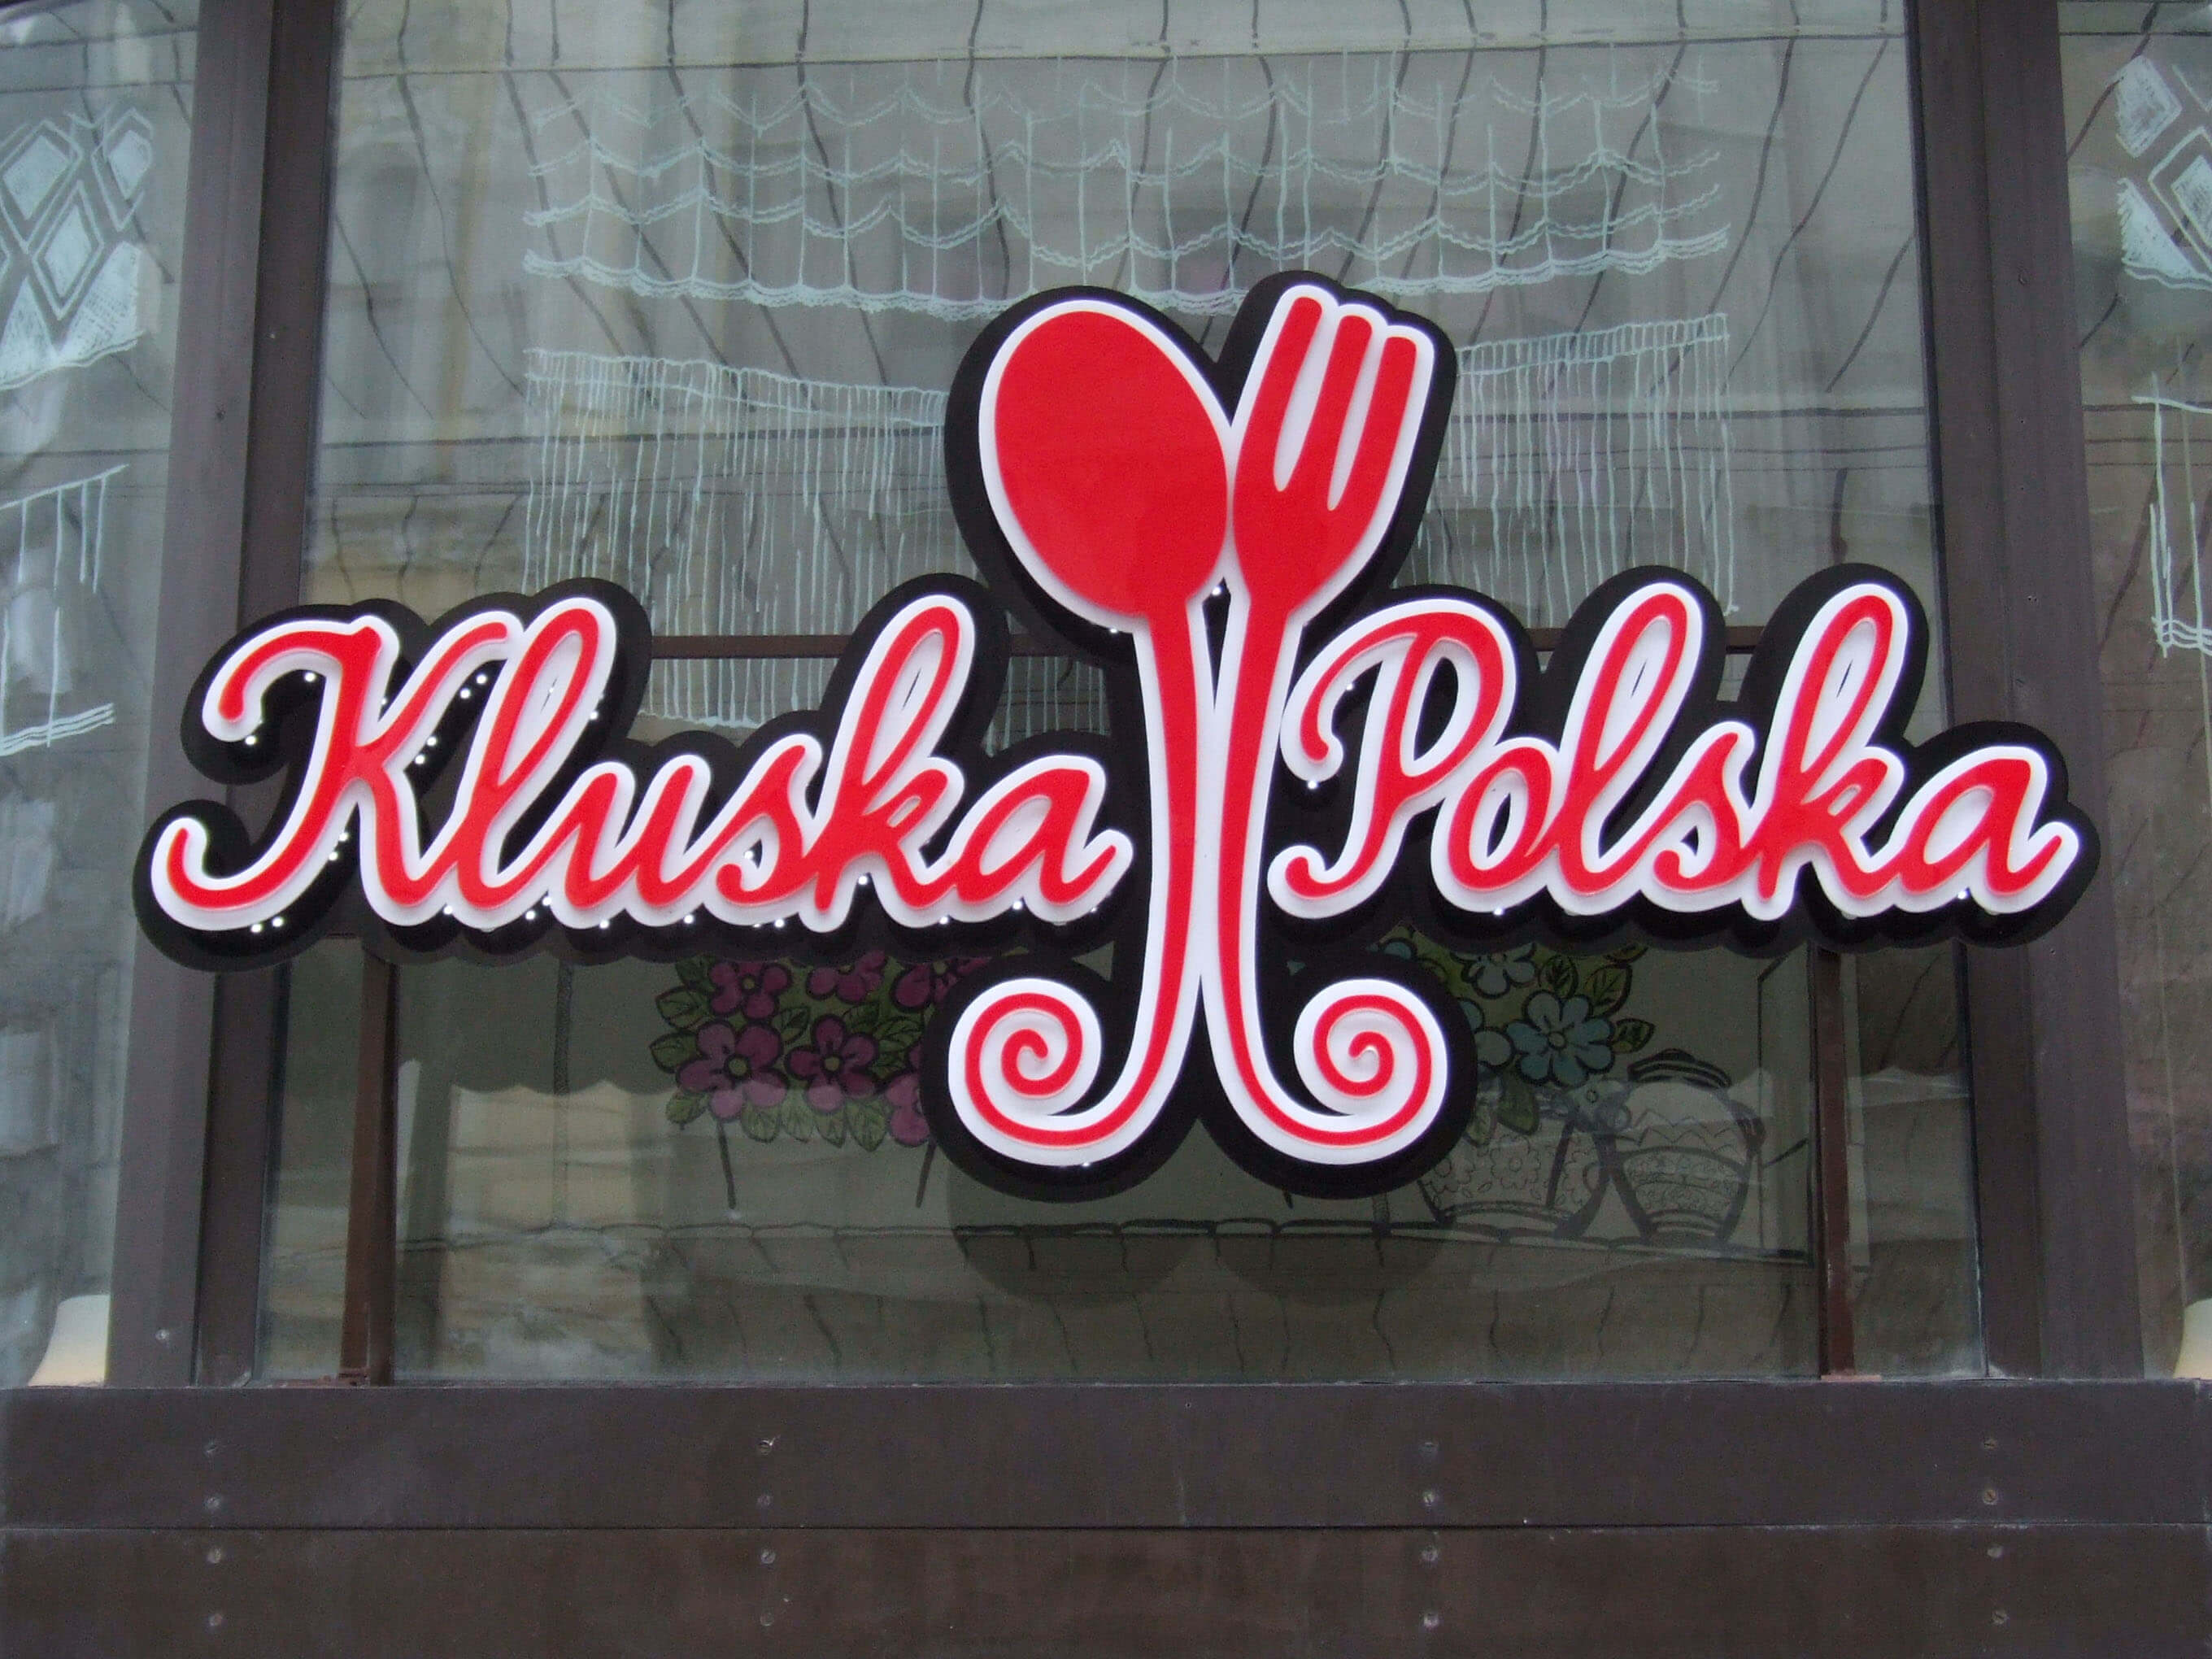 litery przestrzenne dla restauracji warszawa kluska polska